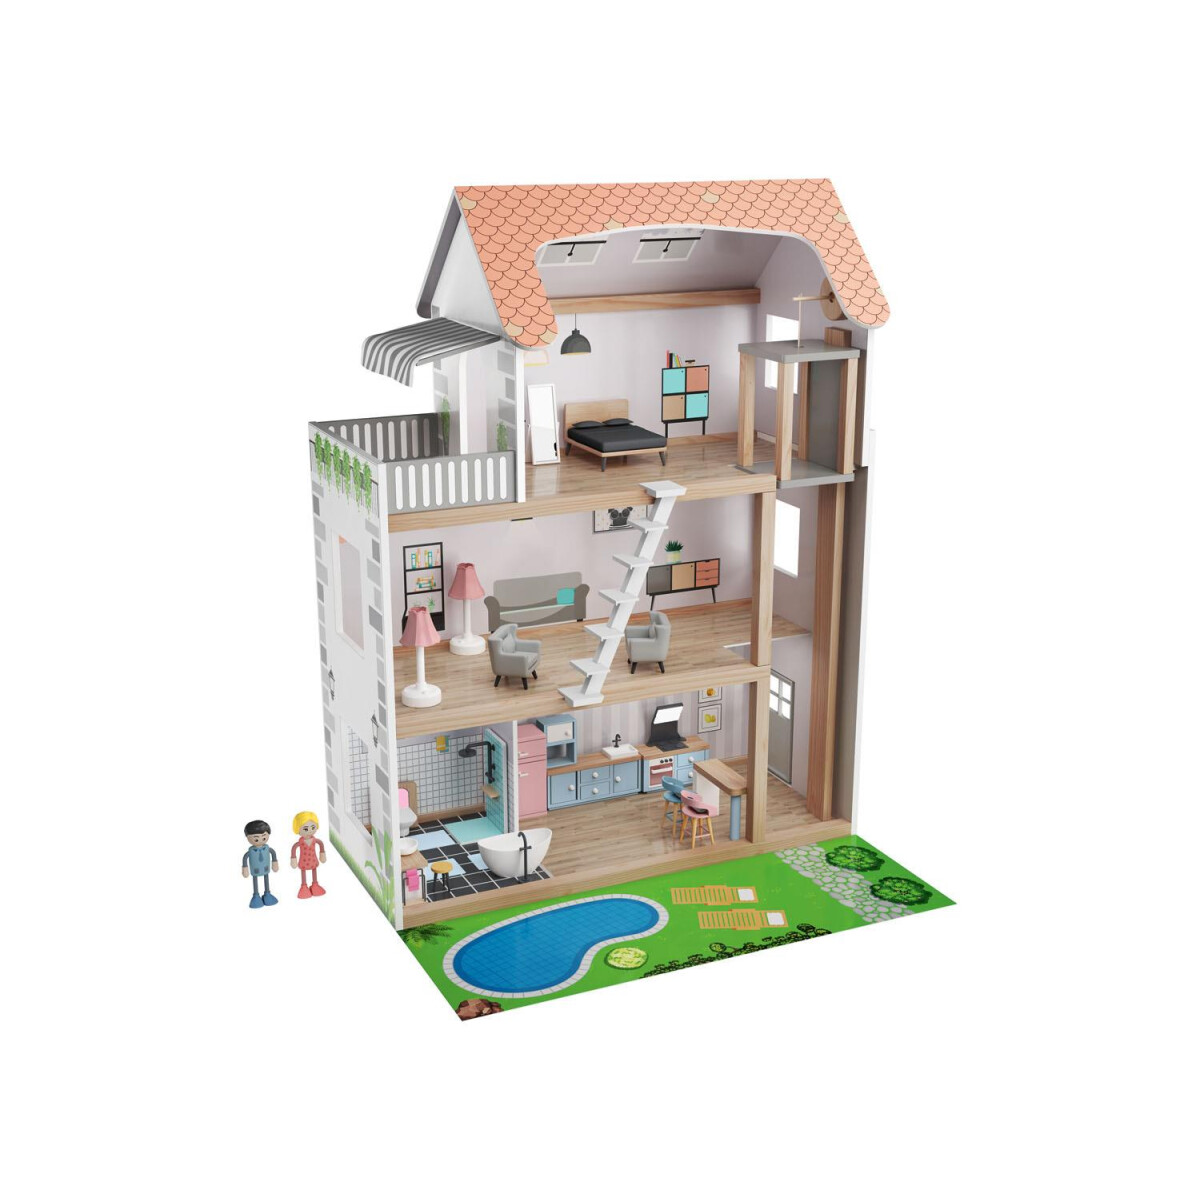 Playtive Puppenhaus aus Holz - B-Ware sehr gut, 46,99 €